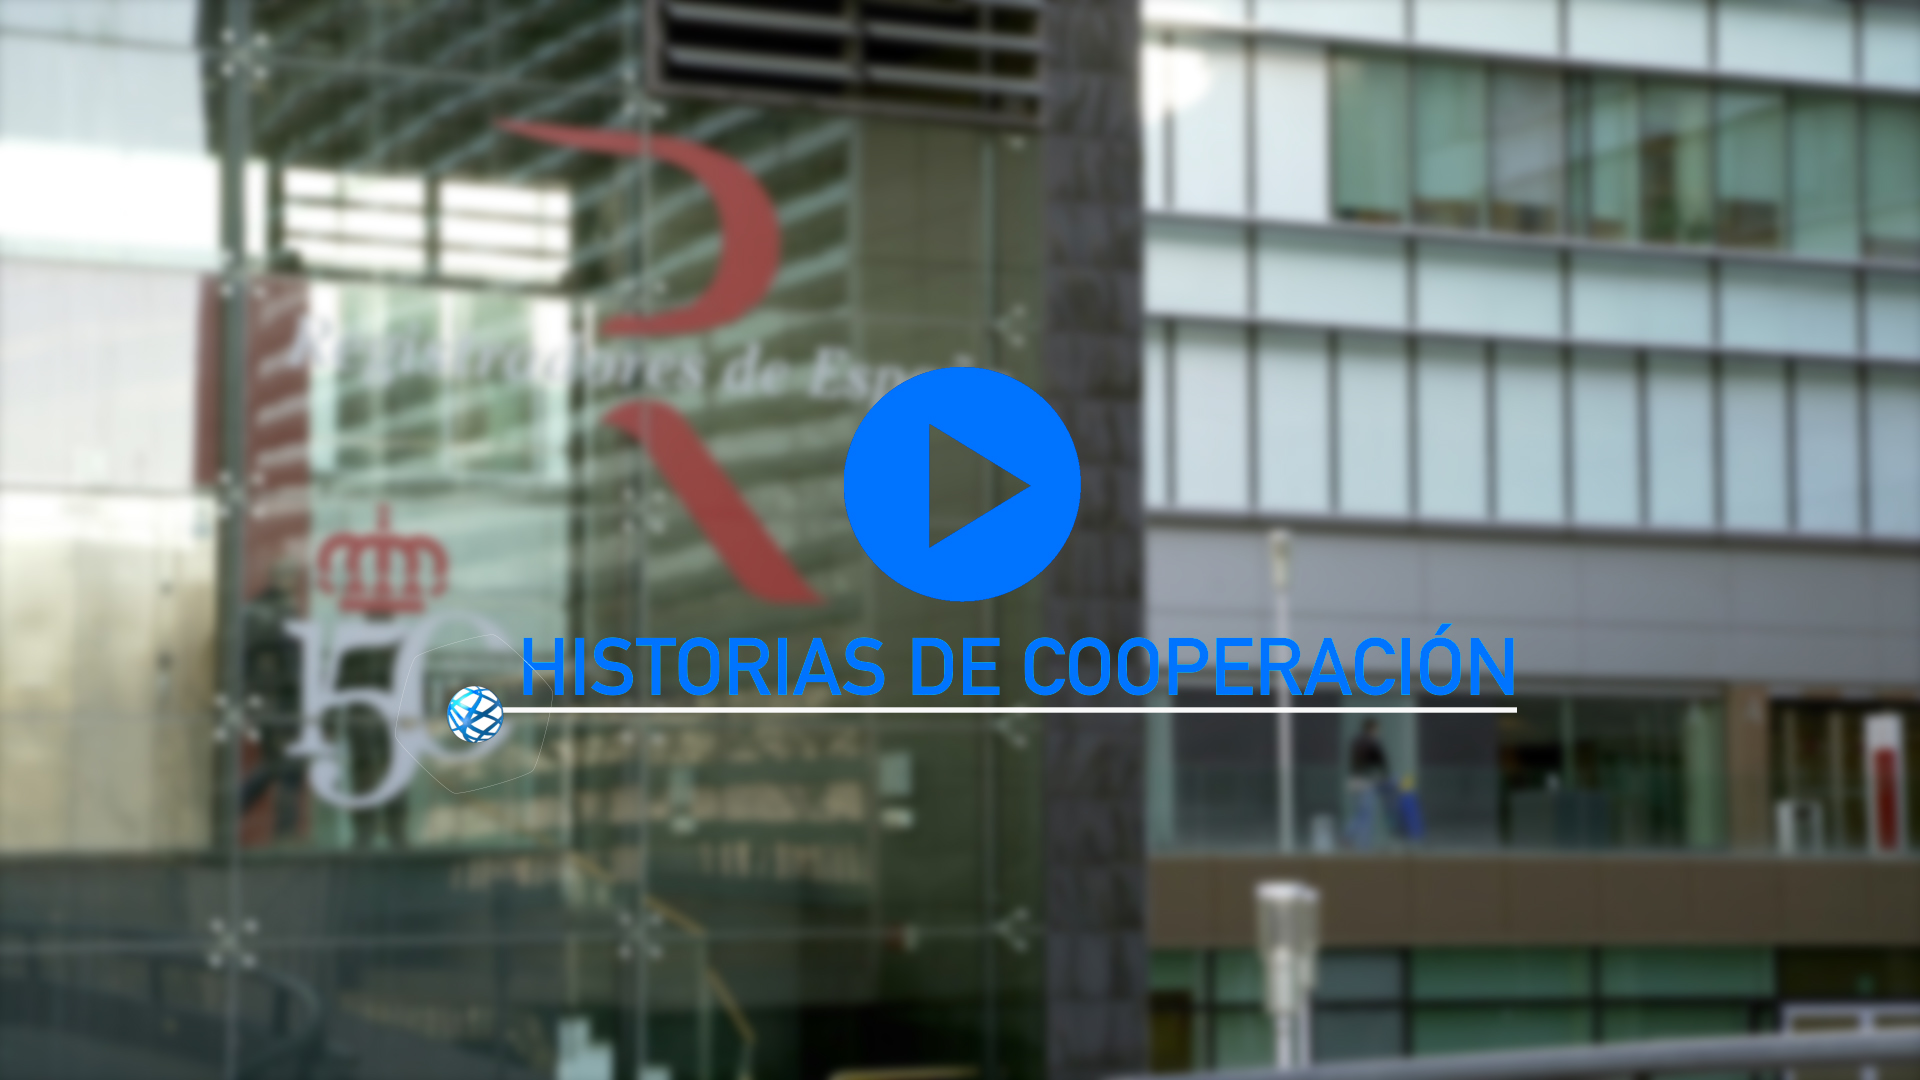 Historias de cooperación: Los registros en Cuba